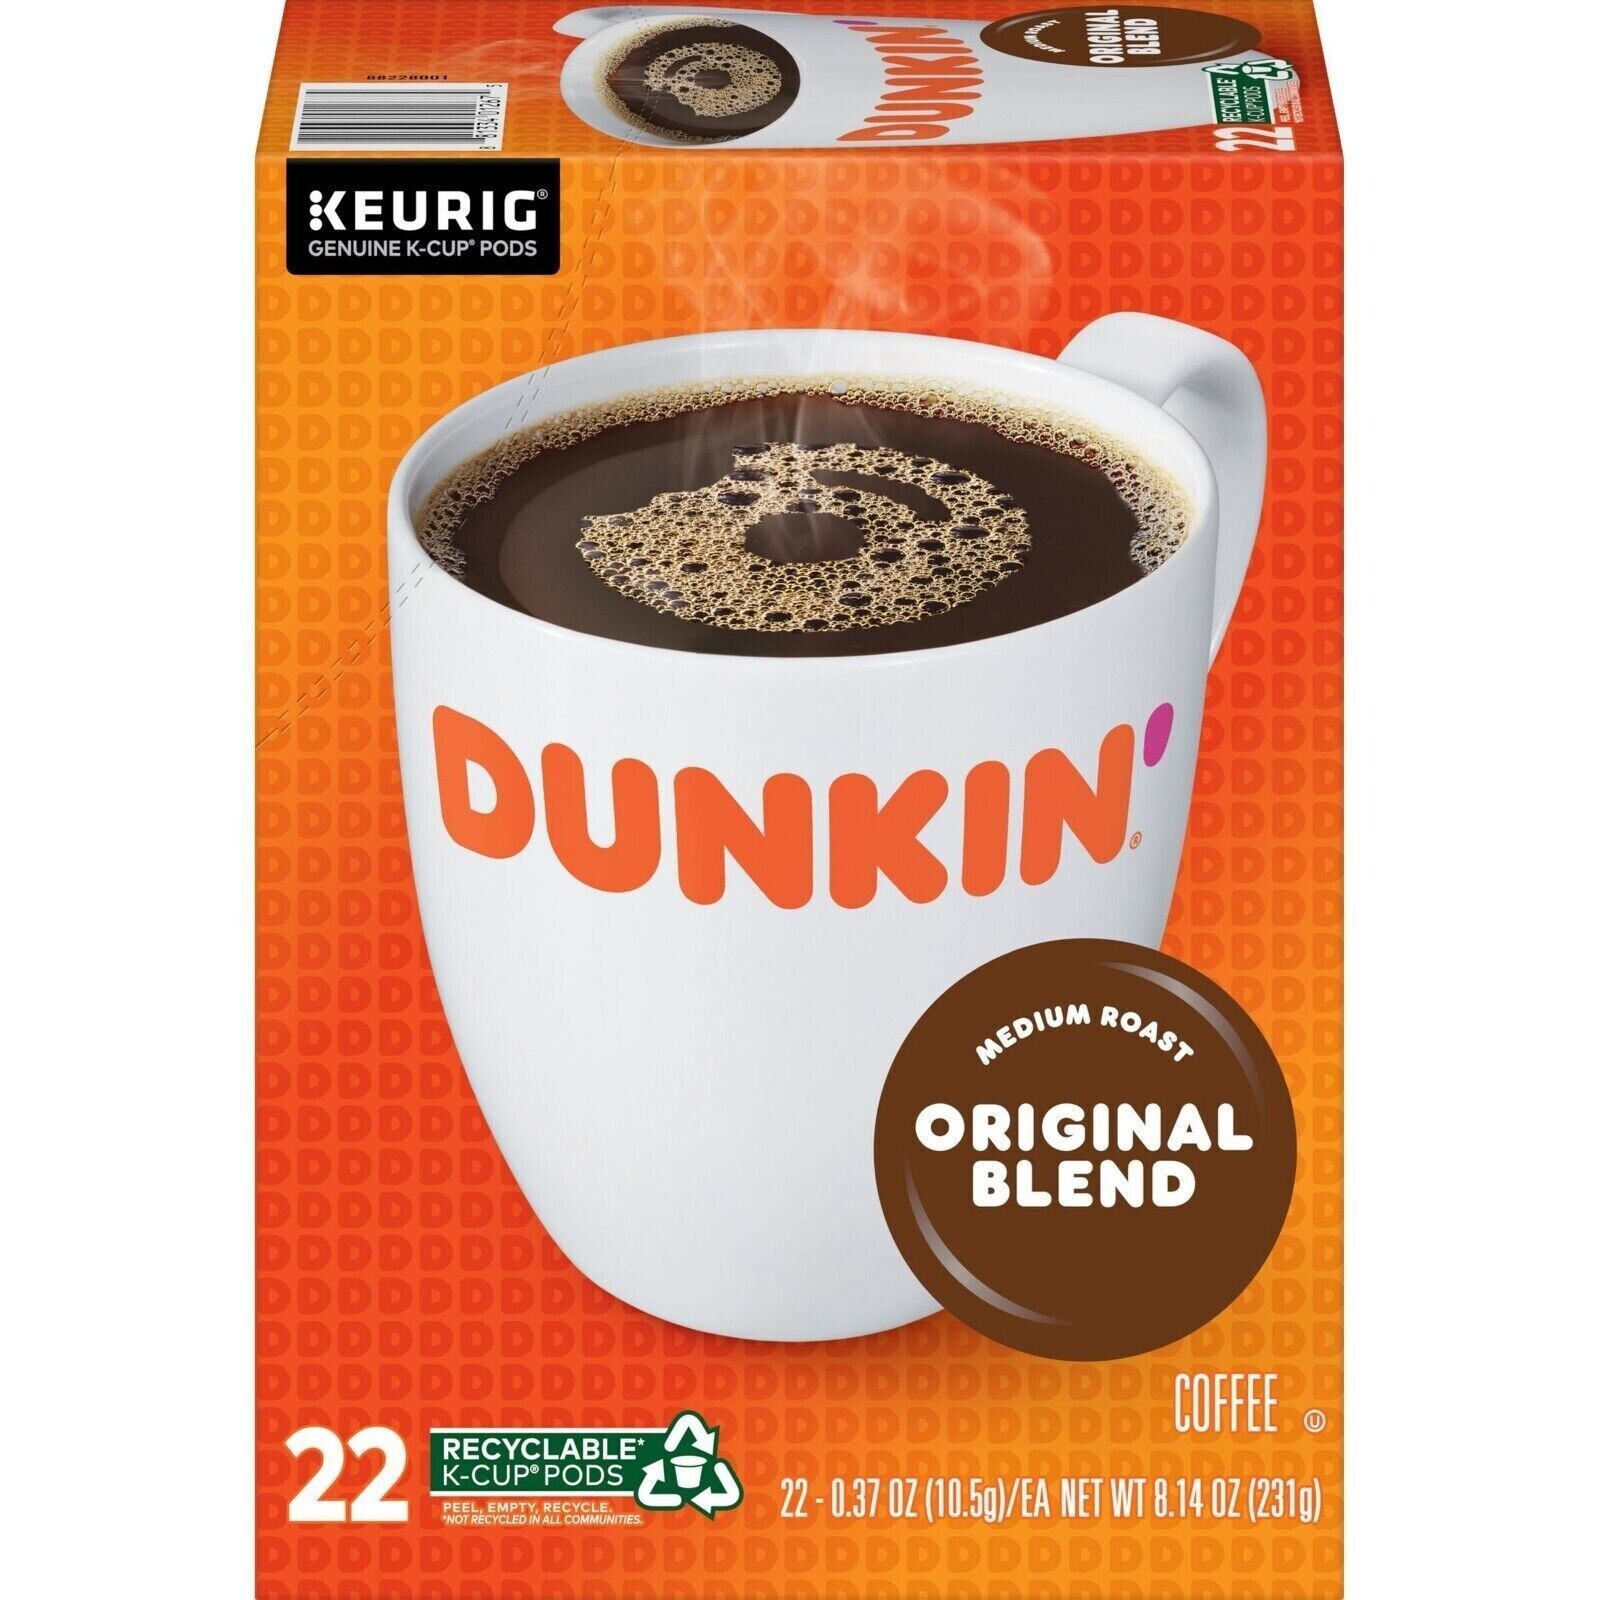 Dunkin' Original Blend K-Cup Pods, - medium roast - 22-Count - brand new - $14.99